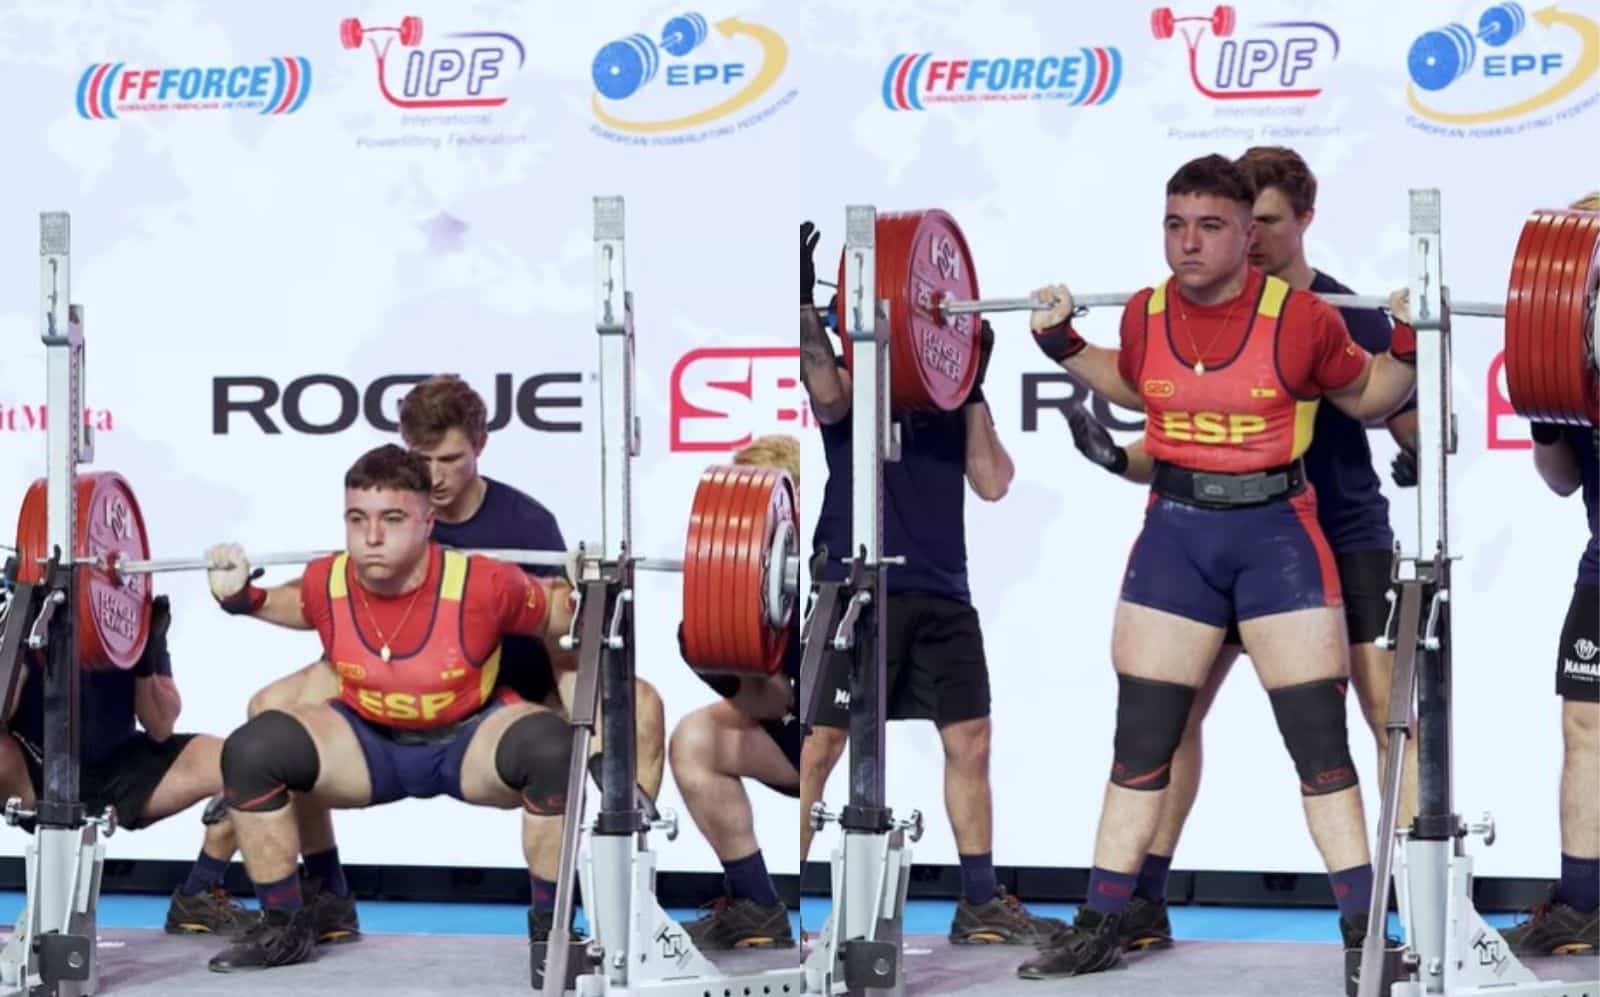 Antonio Perez Barros (105 kg) établit le record du monde IPF junior de squat brut de 335 kg (738,5 lb) à la Coupe universitaire d'Europe 2024 – Fitness Volt